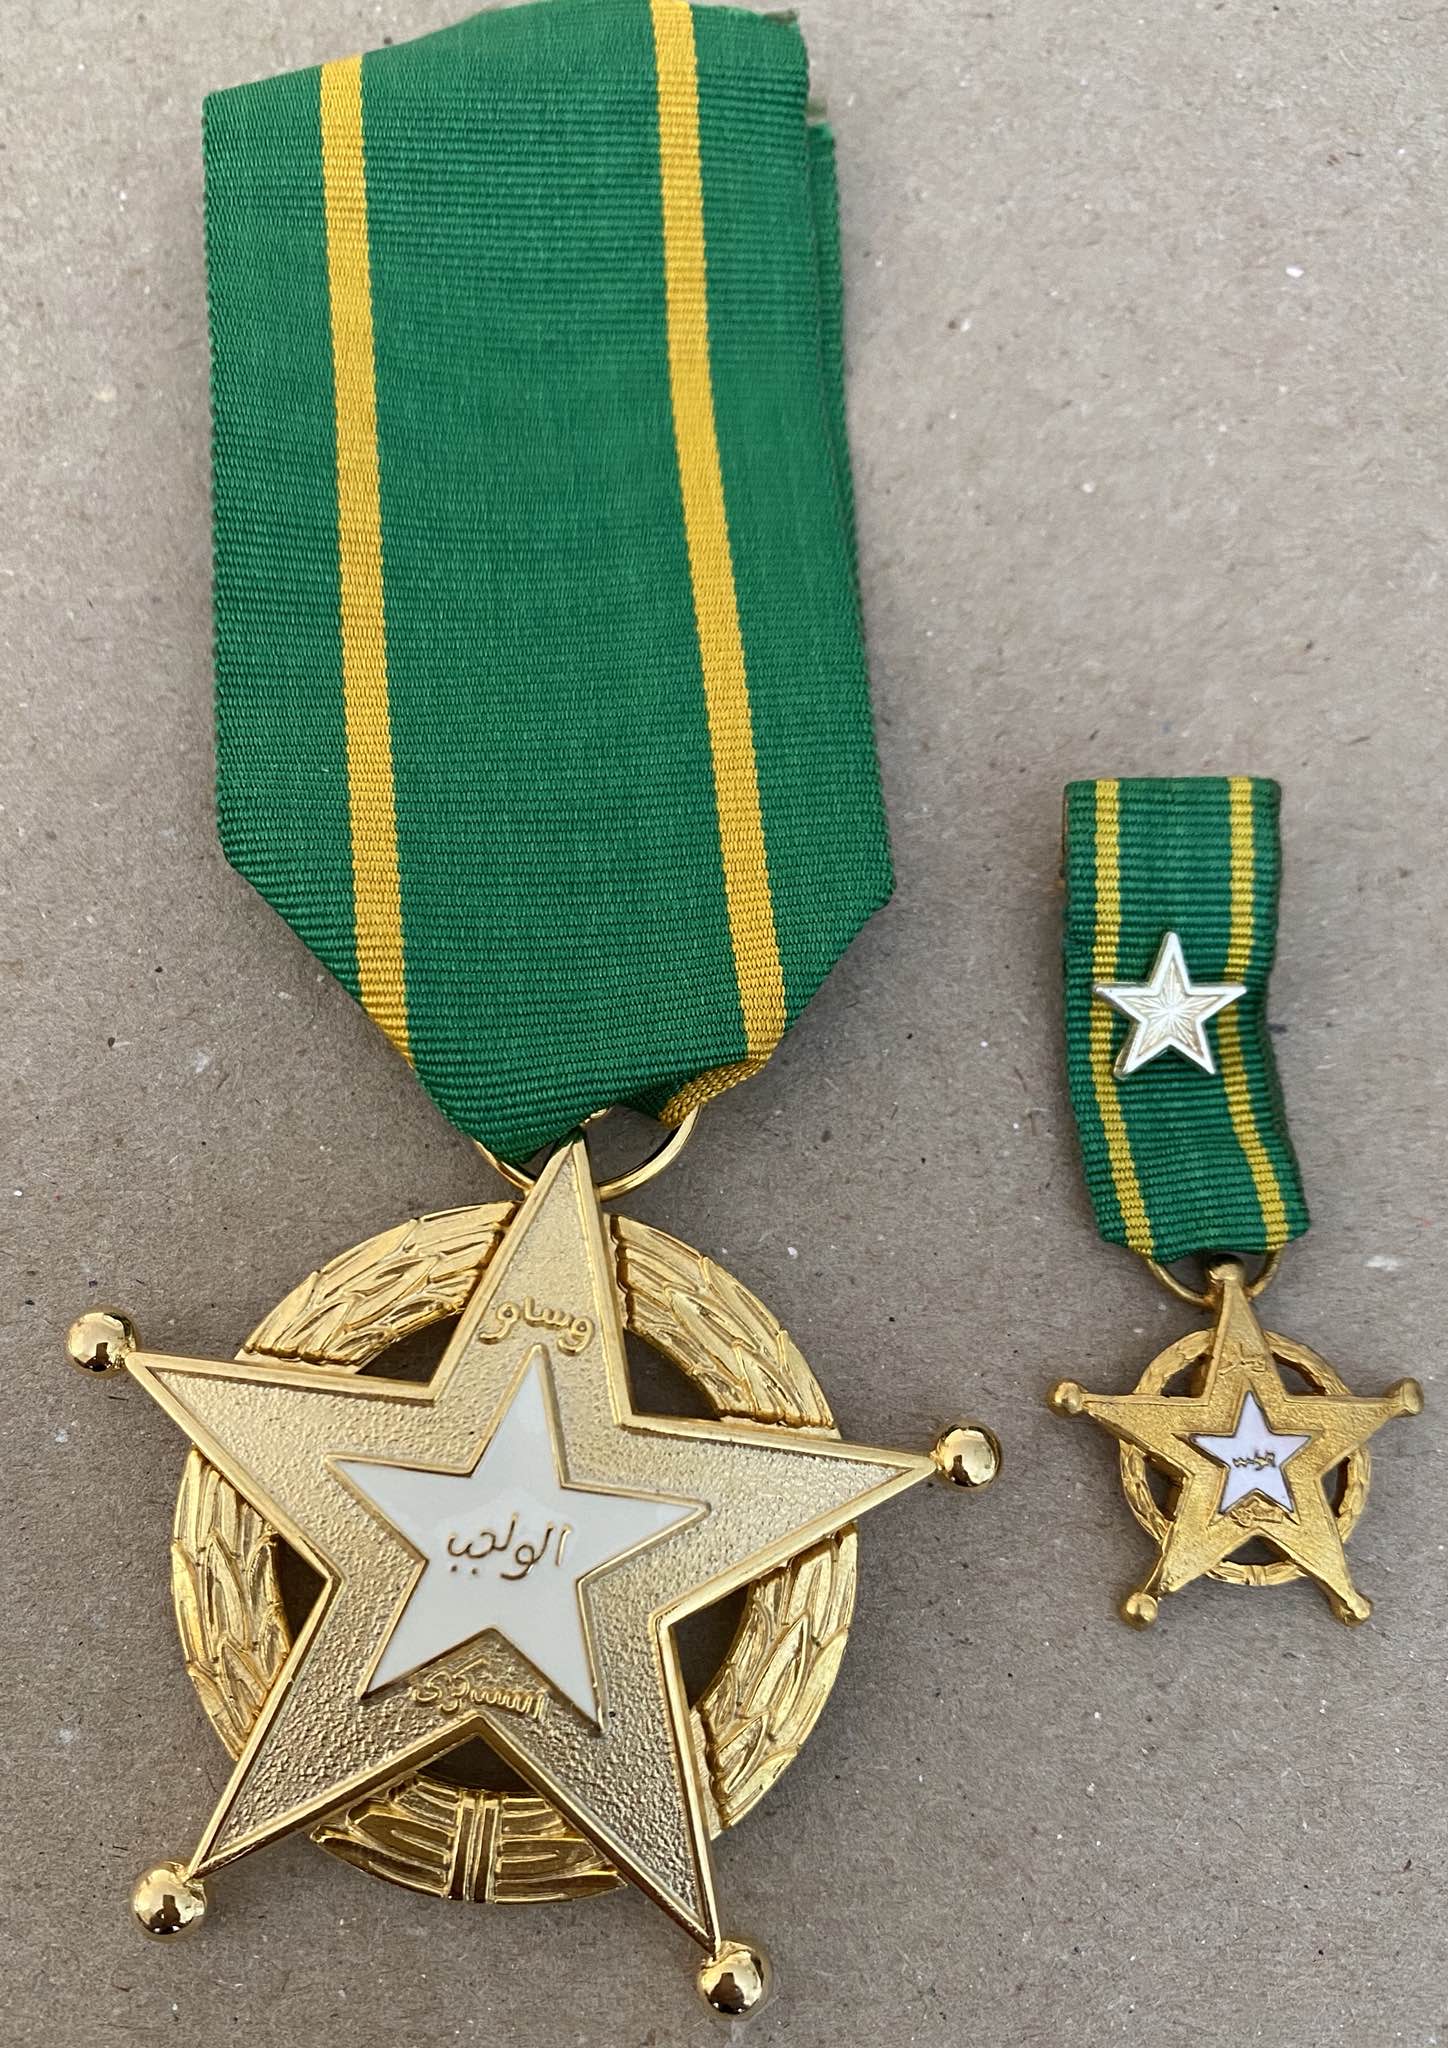 1962 Kuwait Order of Military Duty Chest Bage (Set of 2 Medals) 2nd Class Nichan الكويت وسام الواجب العسكري